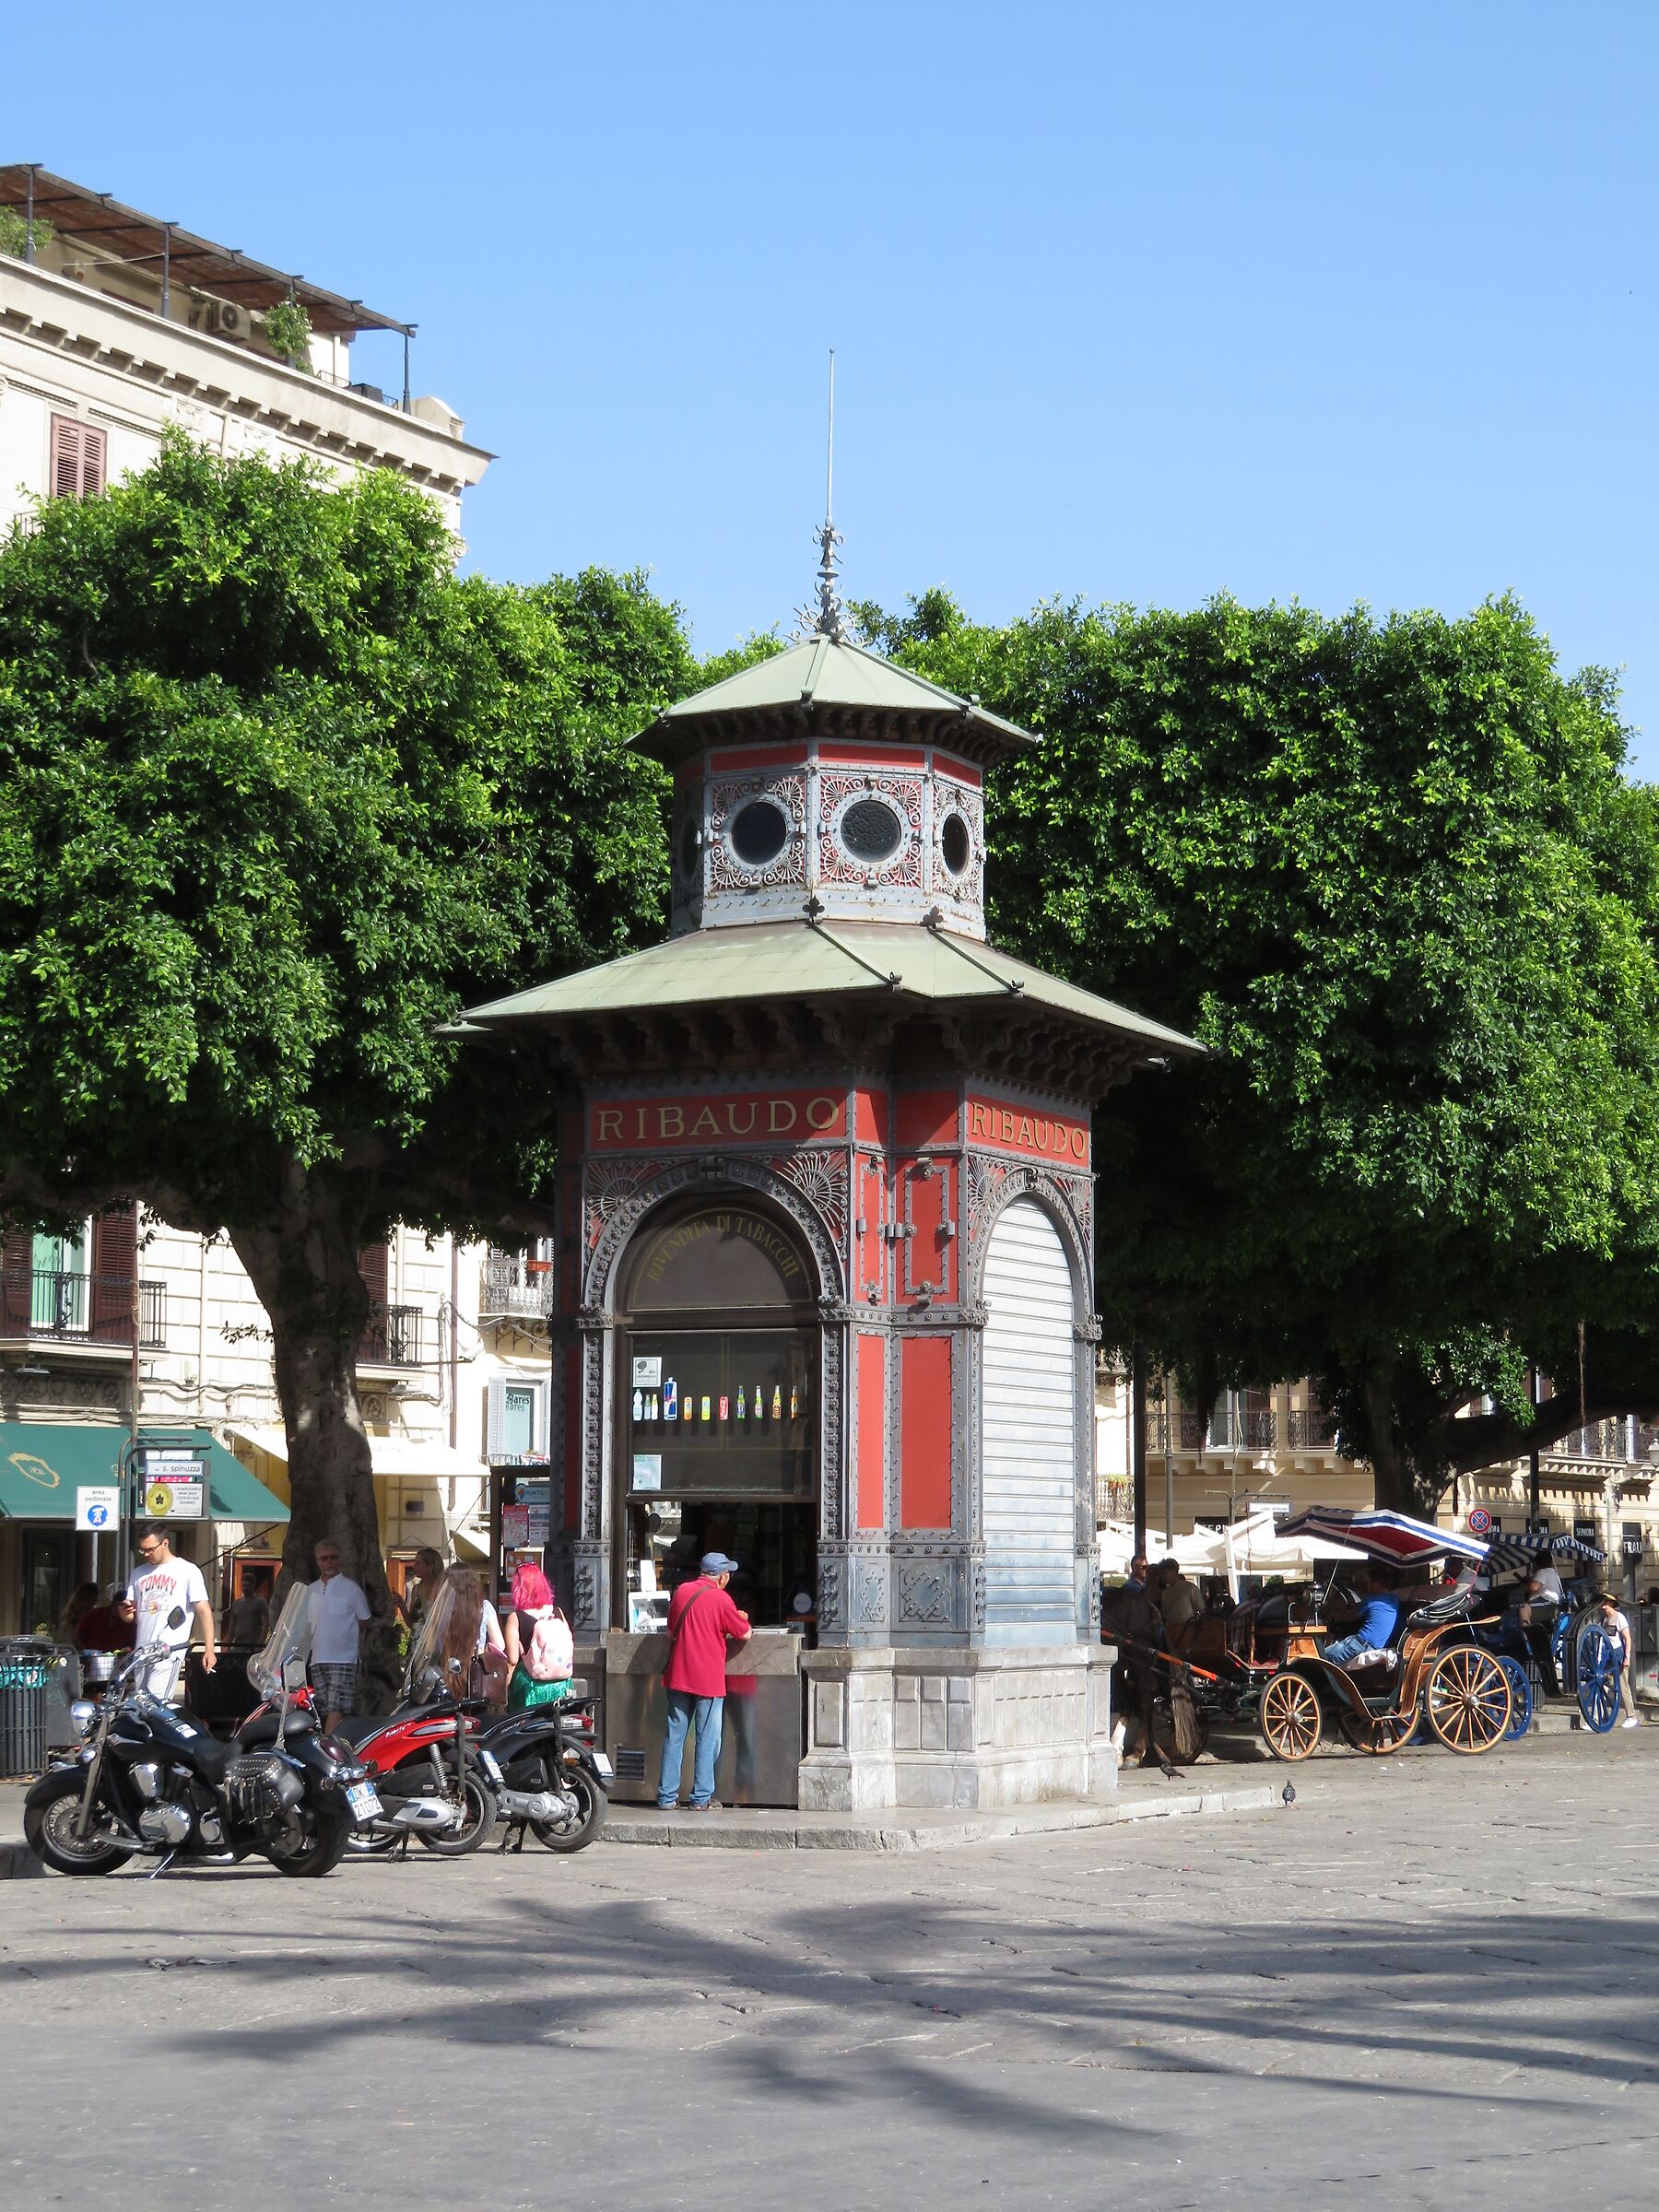 Palermo: historic kiosk in the city center...